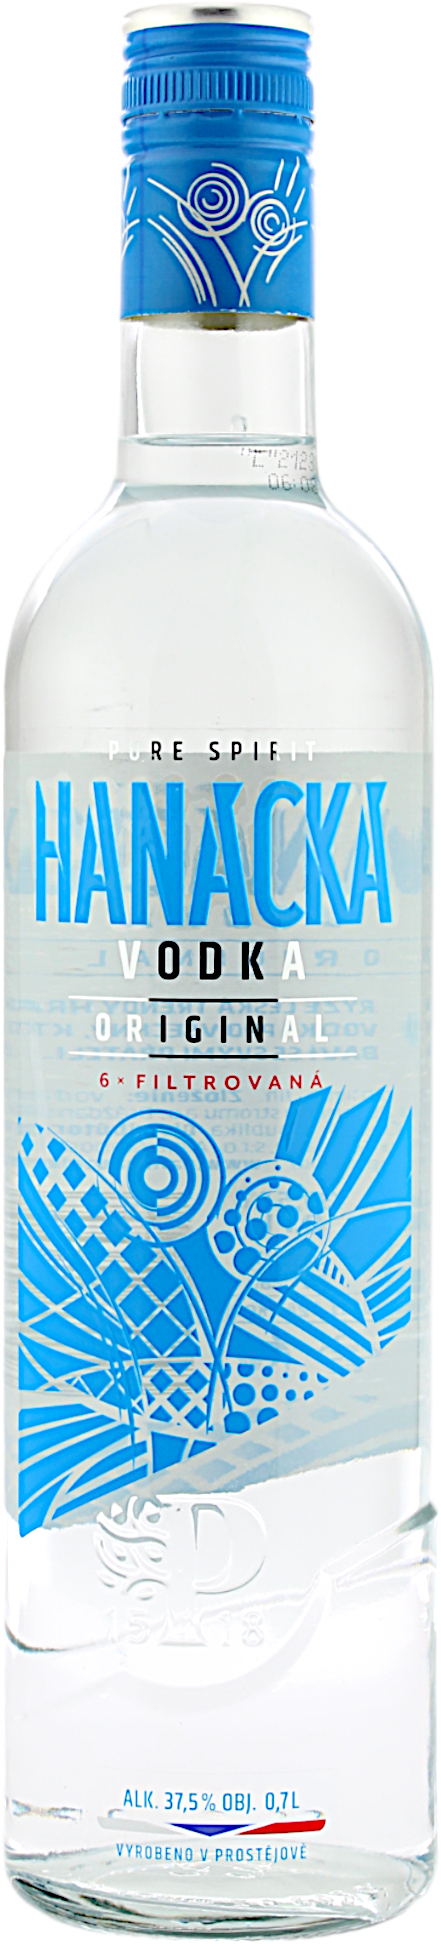 Hanacka Vodka Original 37.5% 0,7l 